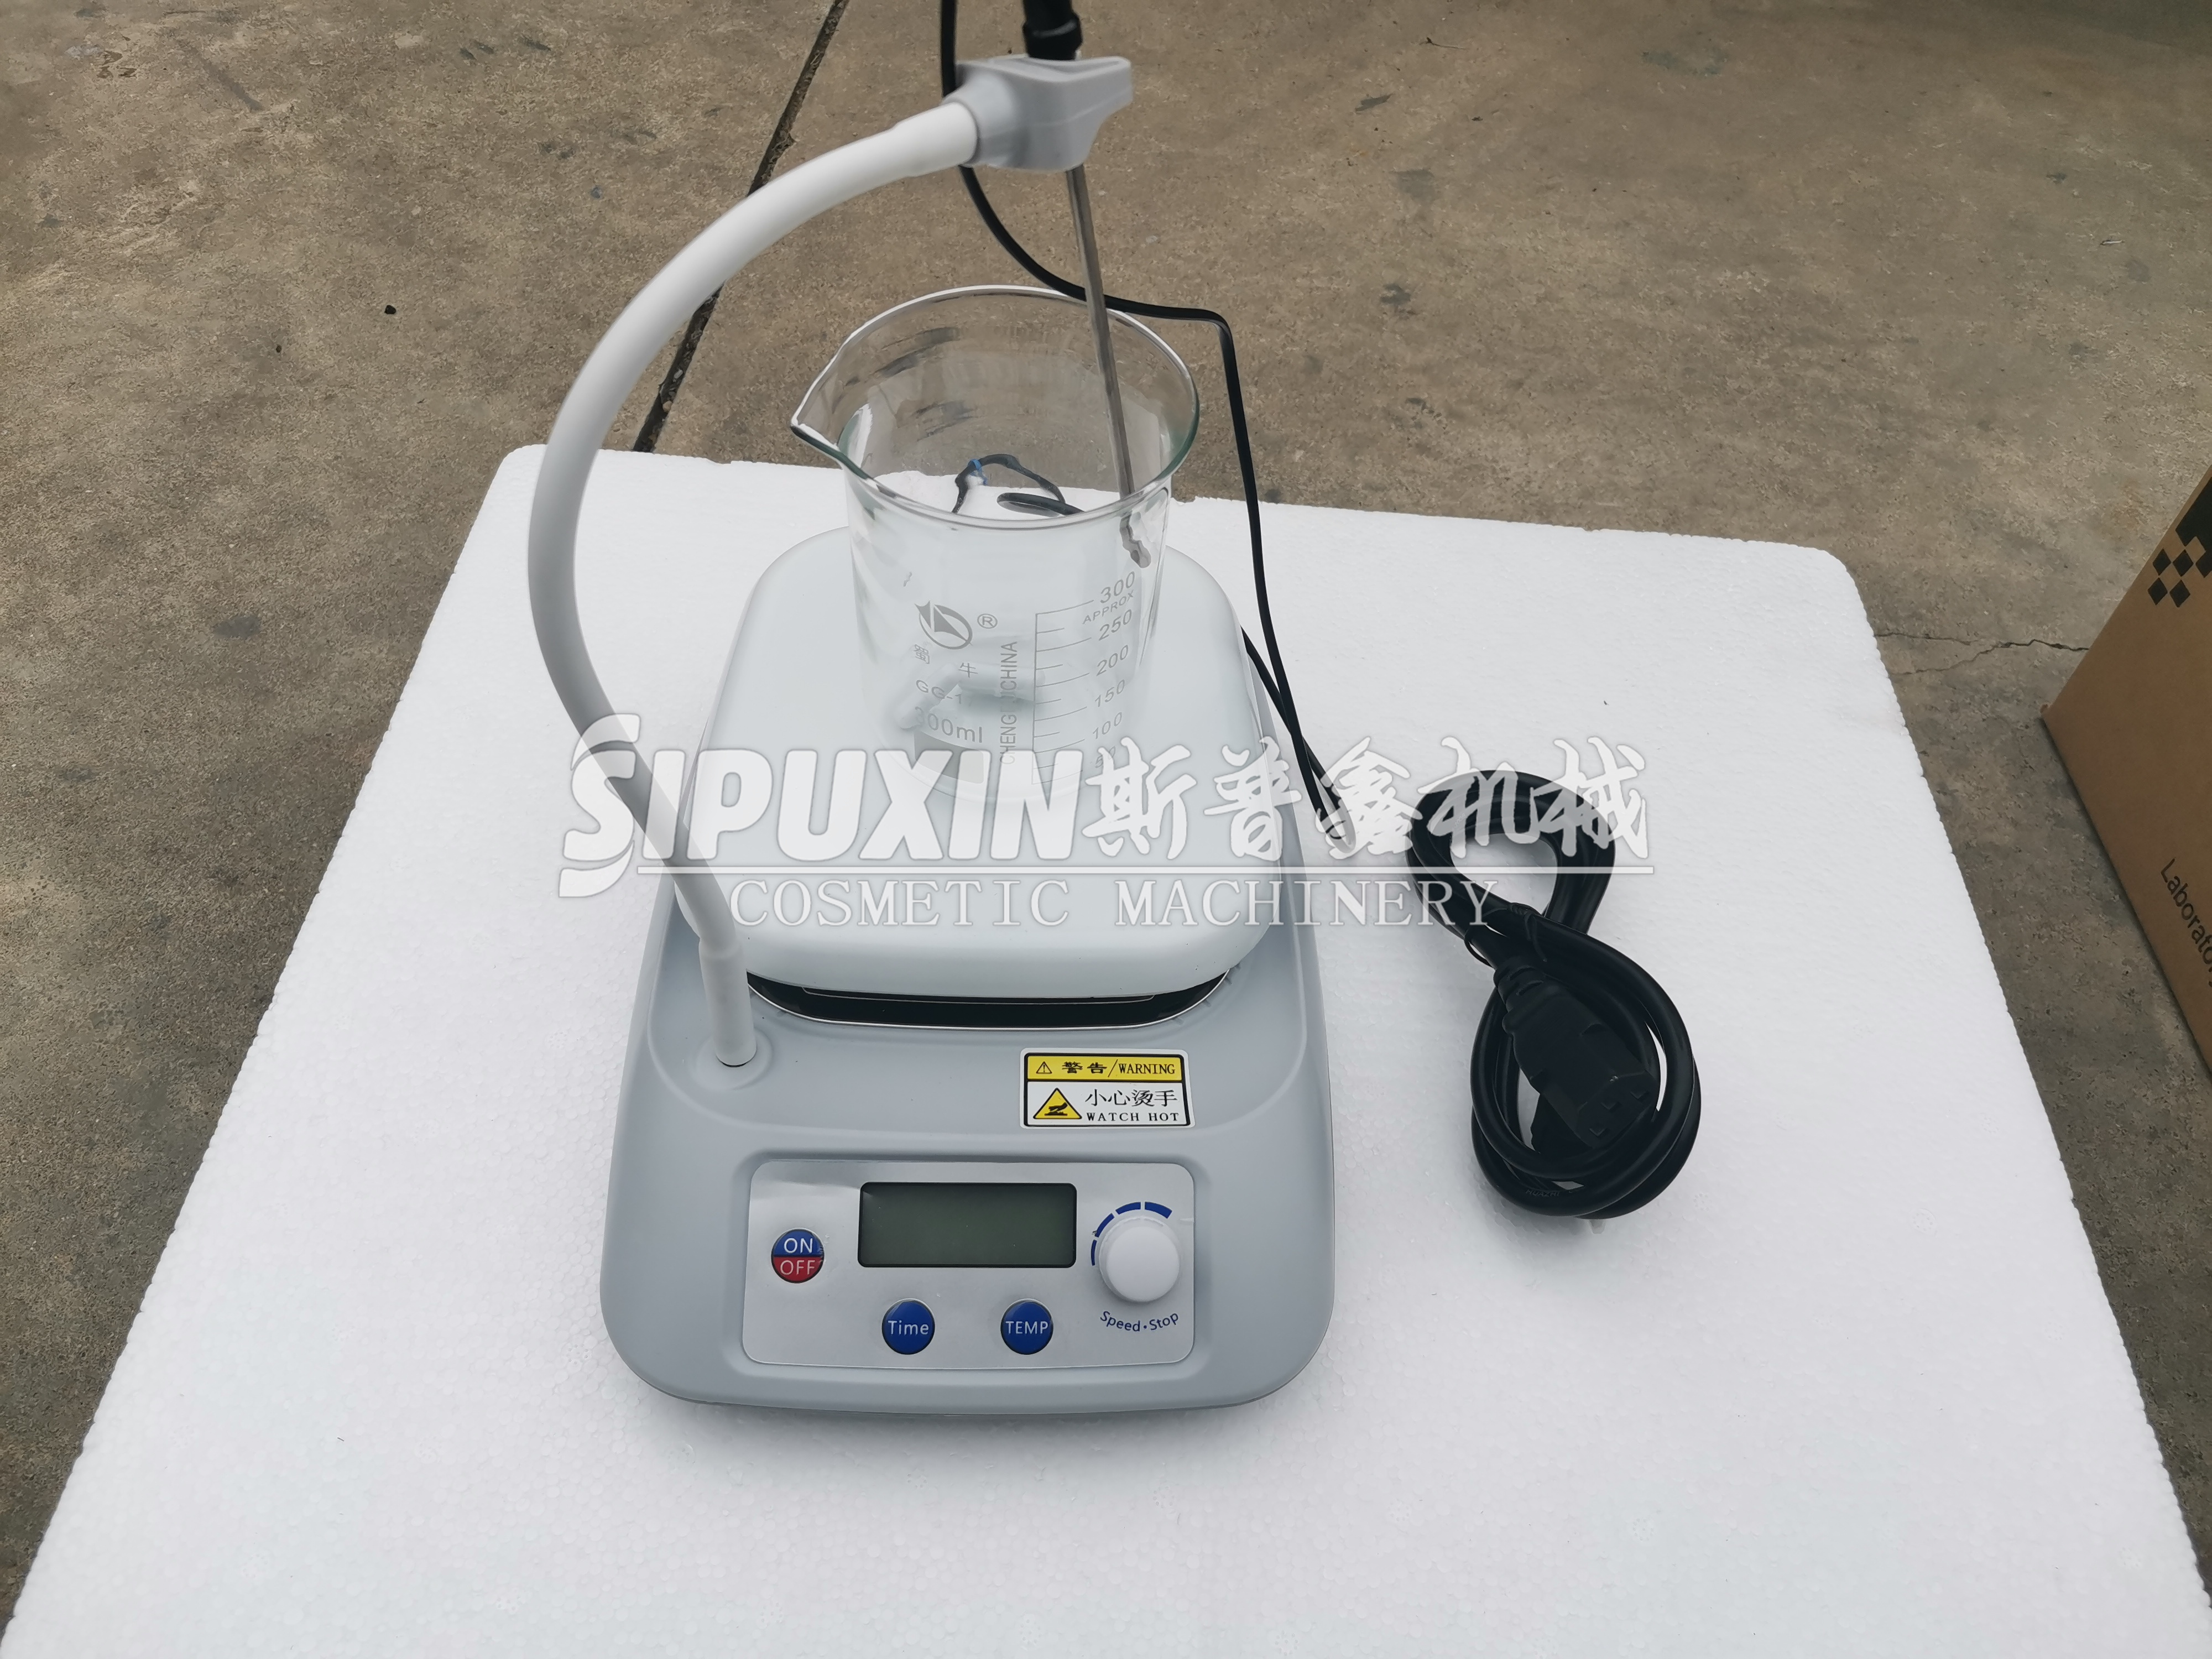 Sipuxin Digital Display Electric Electricer para equipos de laboratorio 